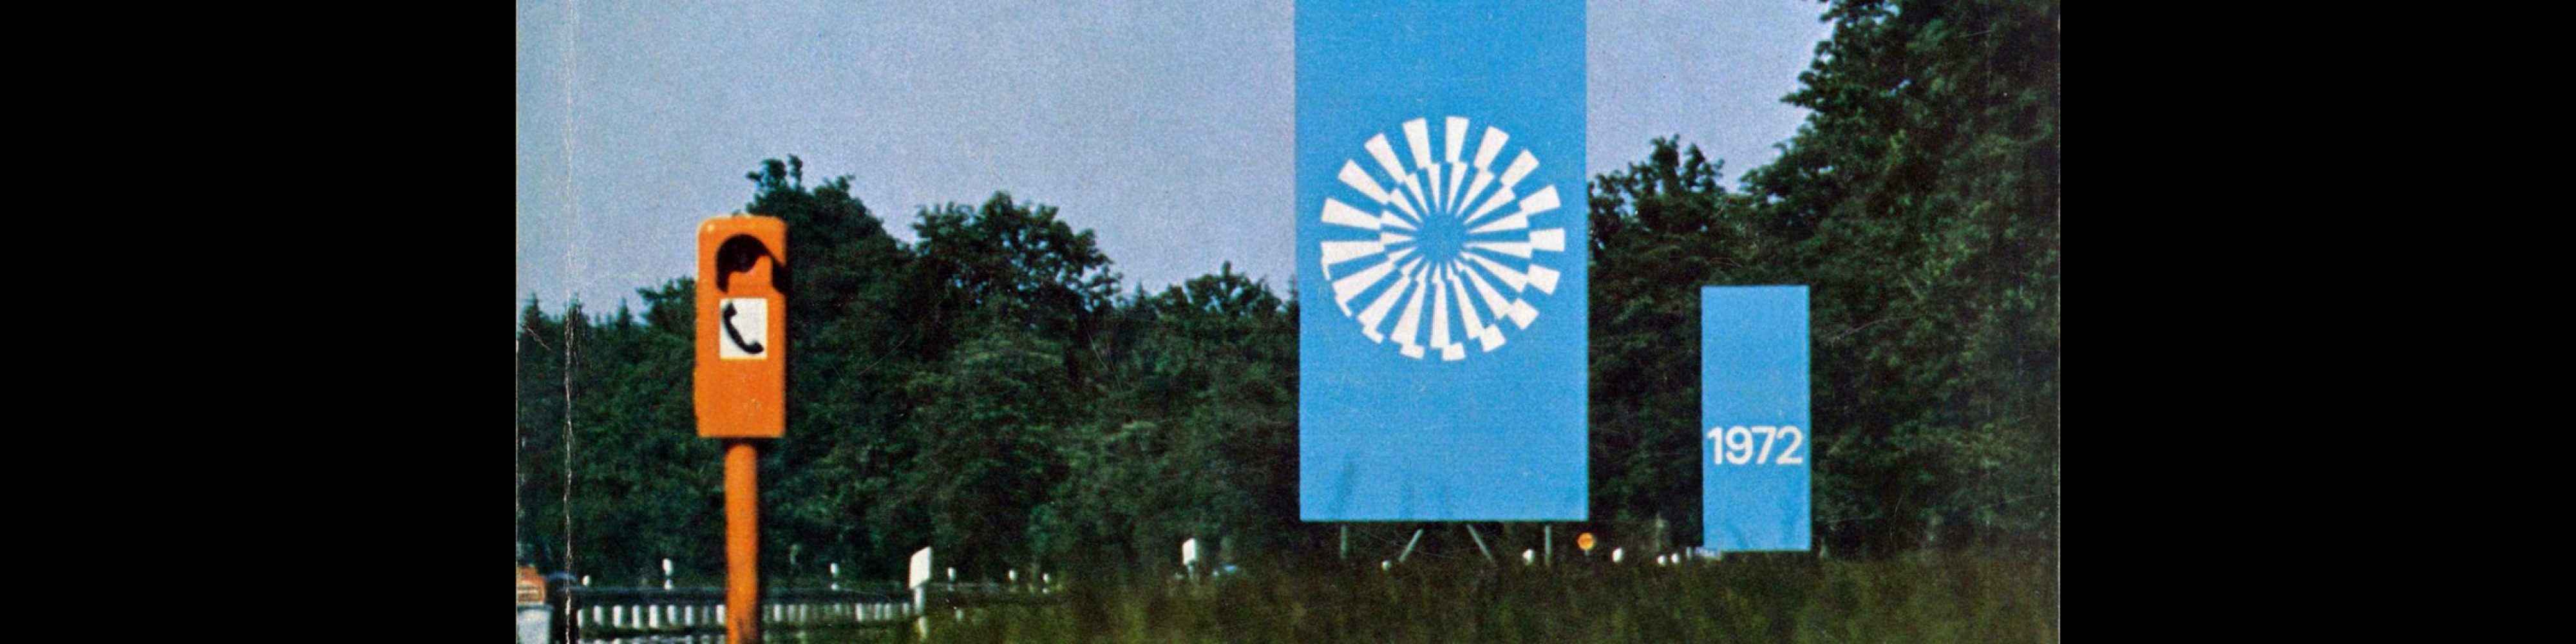 Novum Gebrauchsgraphik, 7, 1972. Olympics Special - Otl Aicher